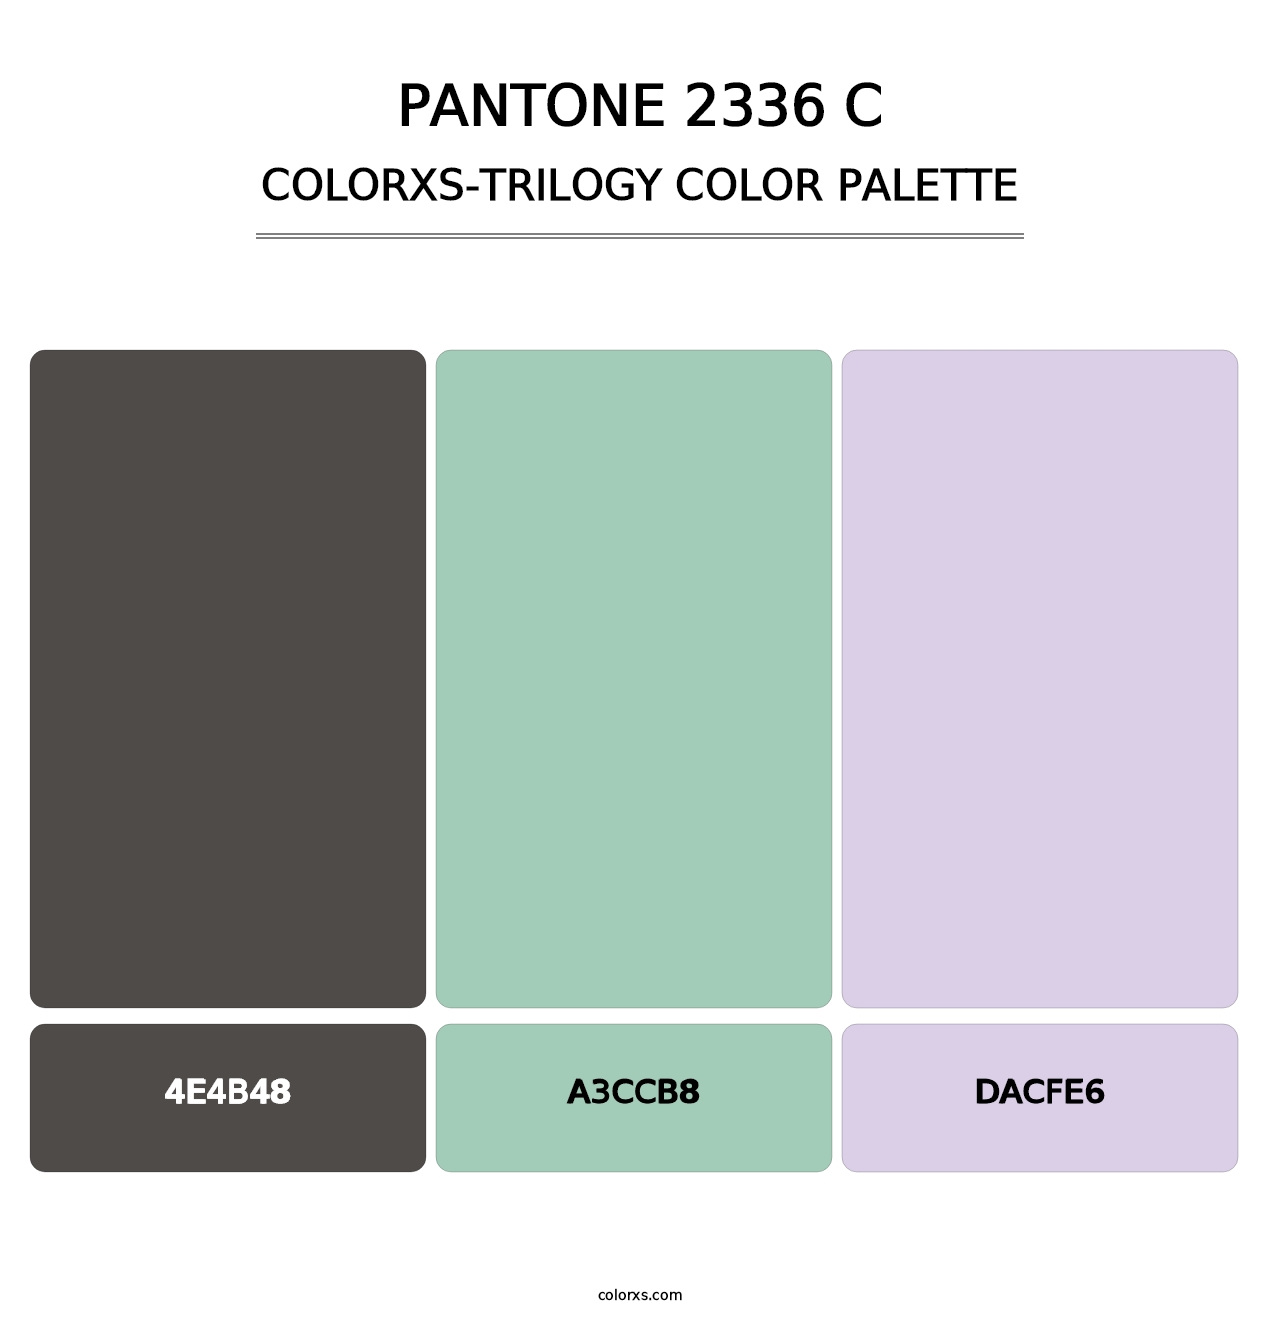 PANTONE 2336 C - Colorxs Trilogy Palette